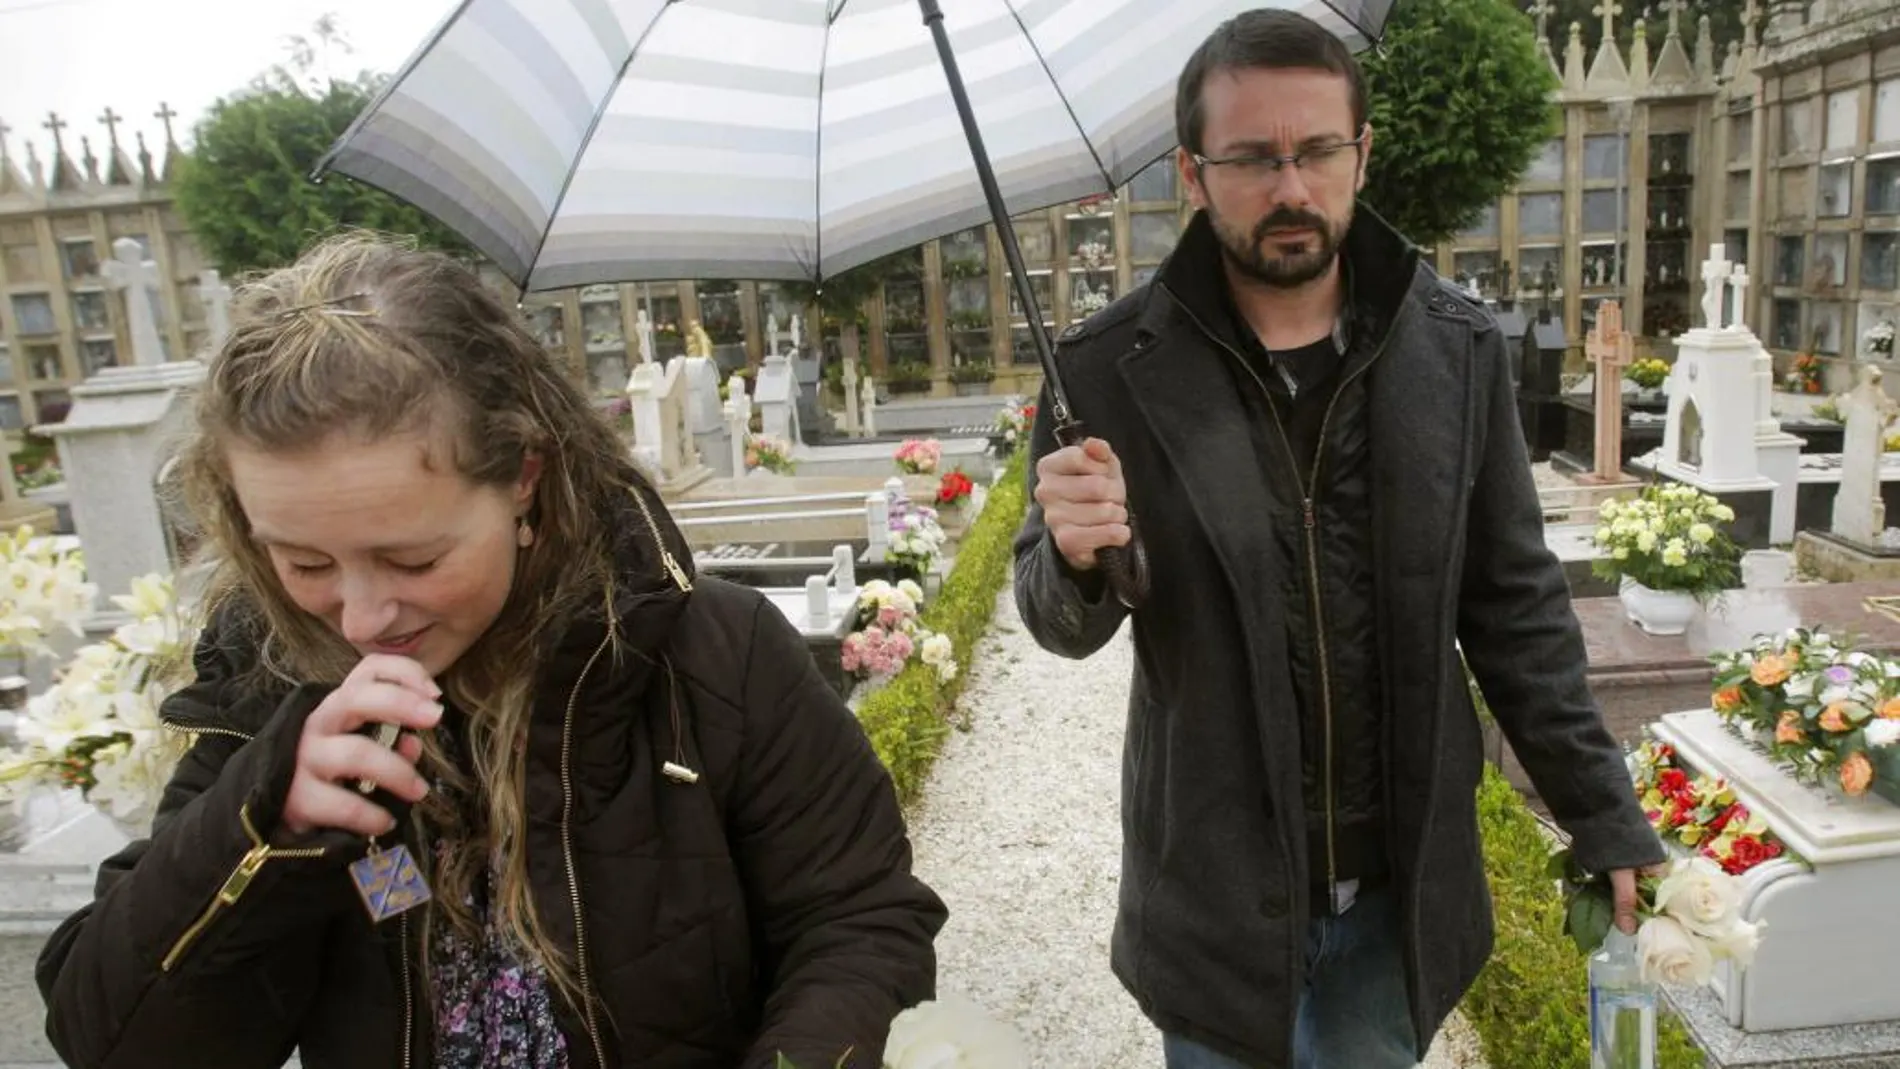 Los padres de la niña Andrea Lago, Estela Ordoñez y Antonio Lago, abandonan el cementerio de Santa Cristina de Barro , donde ha sido enterrada la pequeña